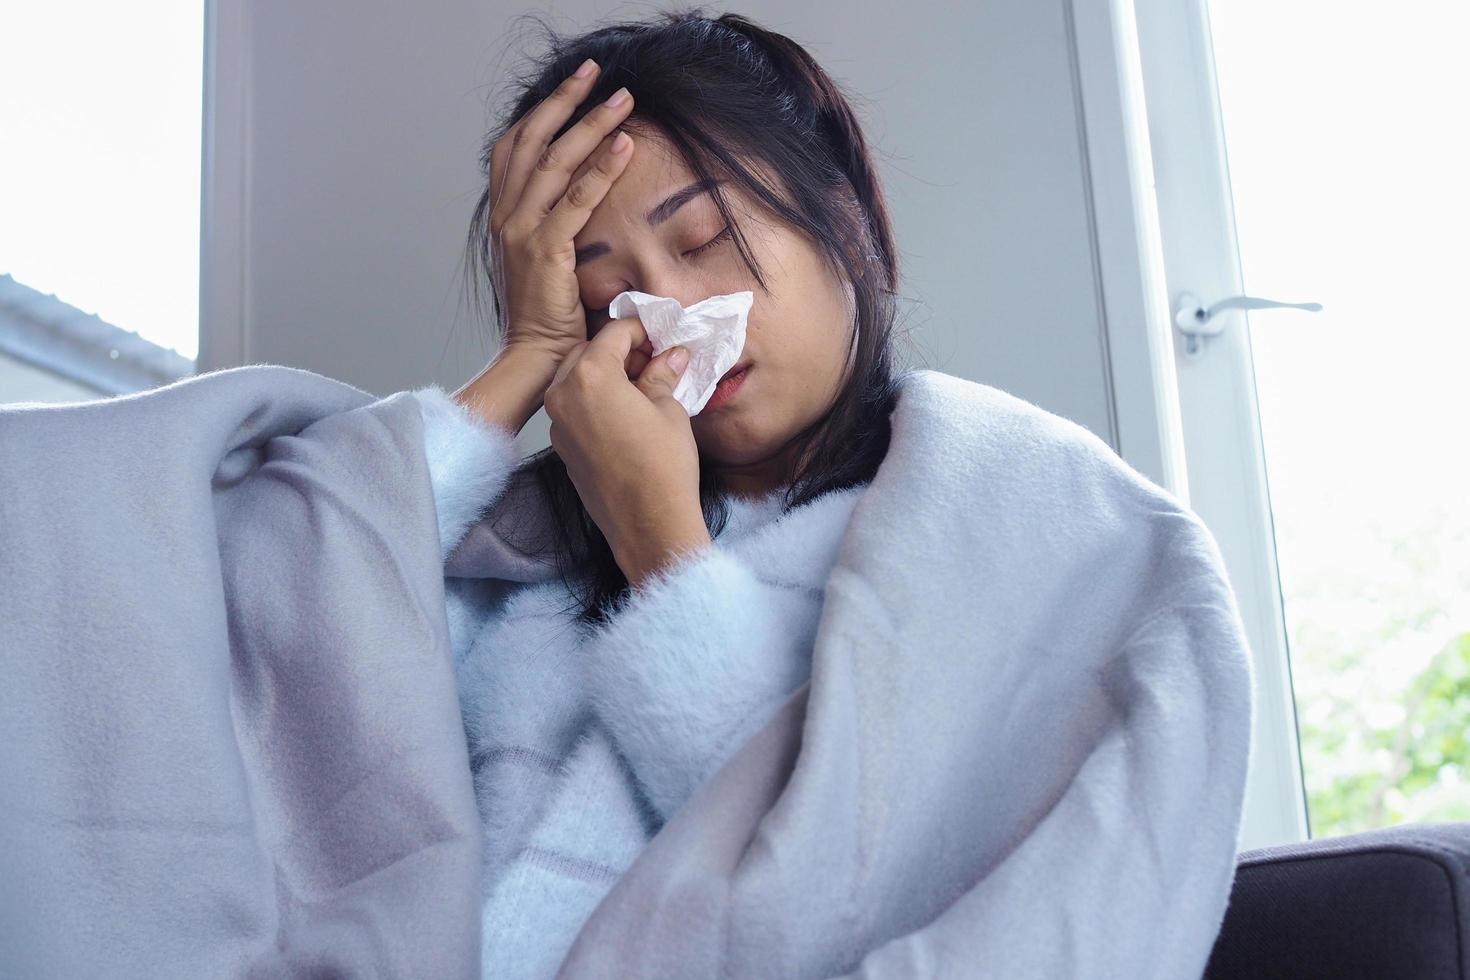 mulher está doente com dor de cabeça, febre alta e gripe, sentada debaixo de um cobertor foto